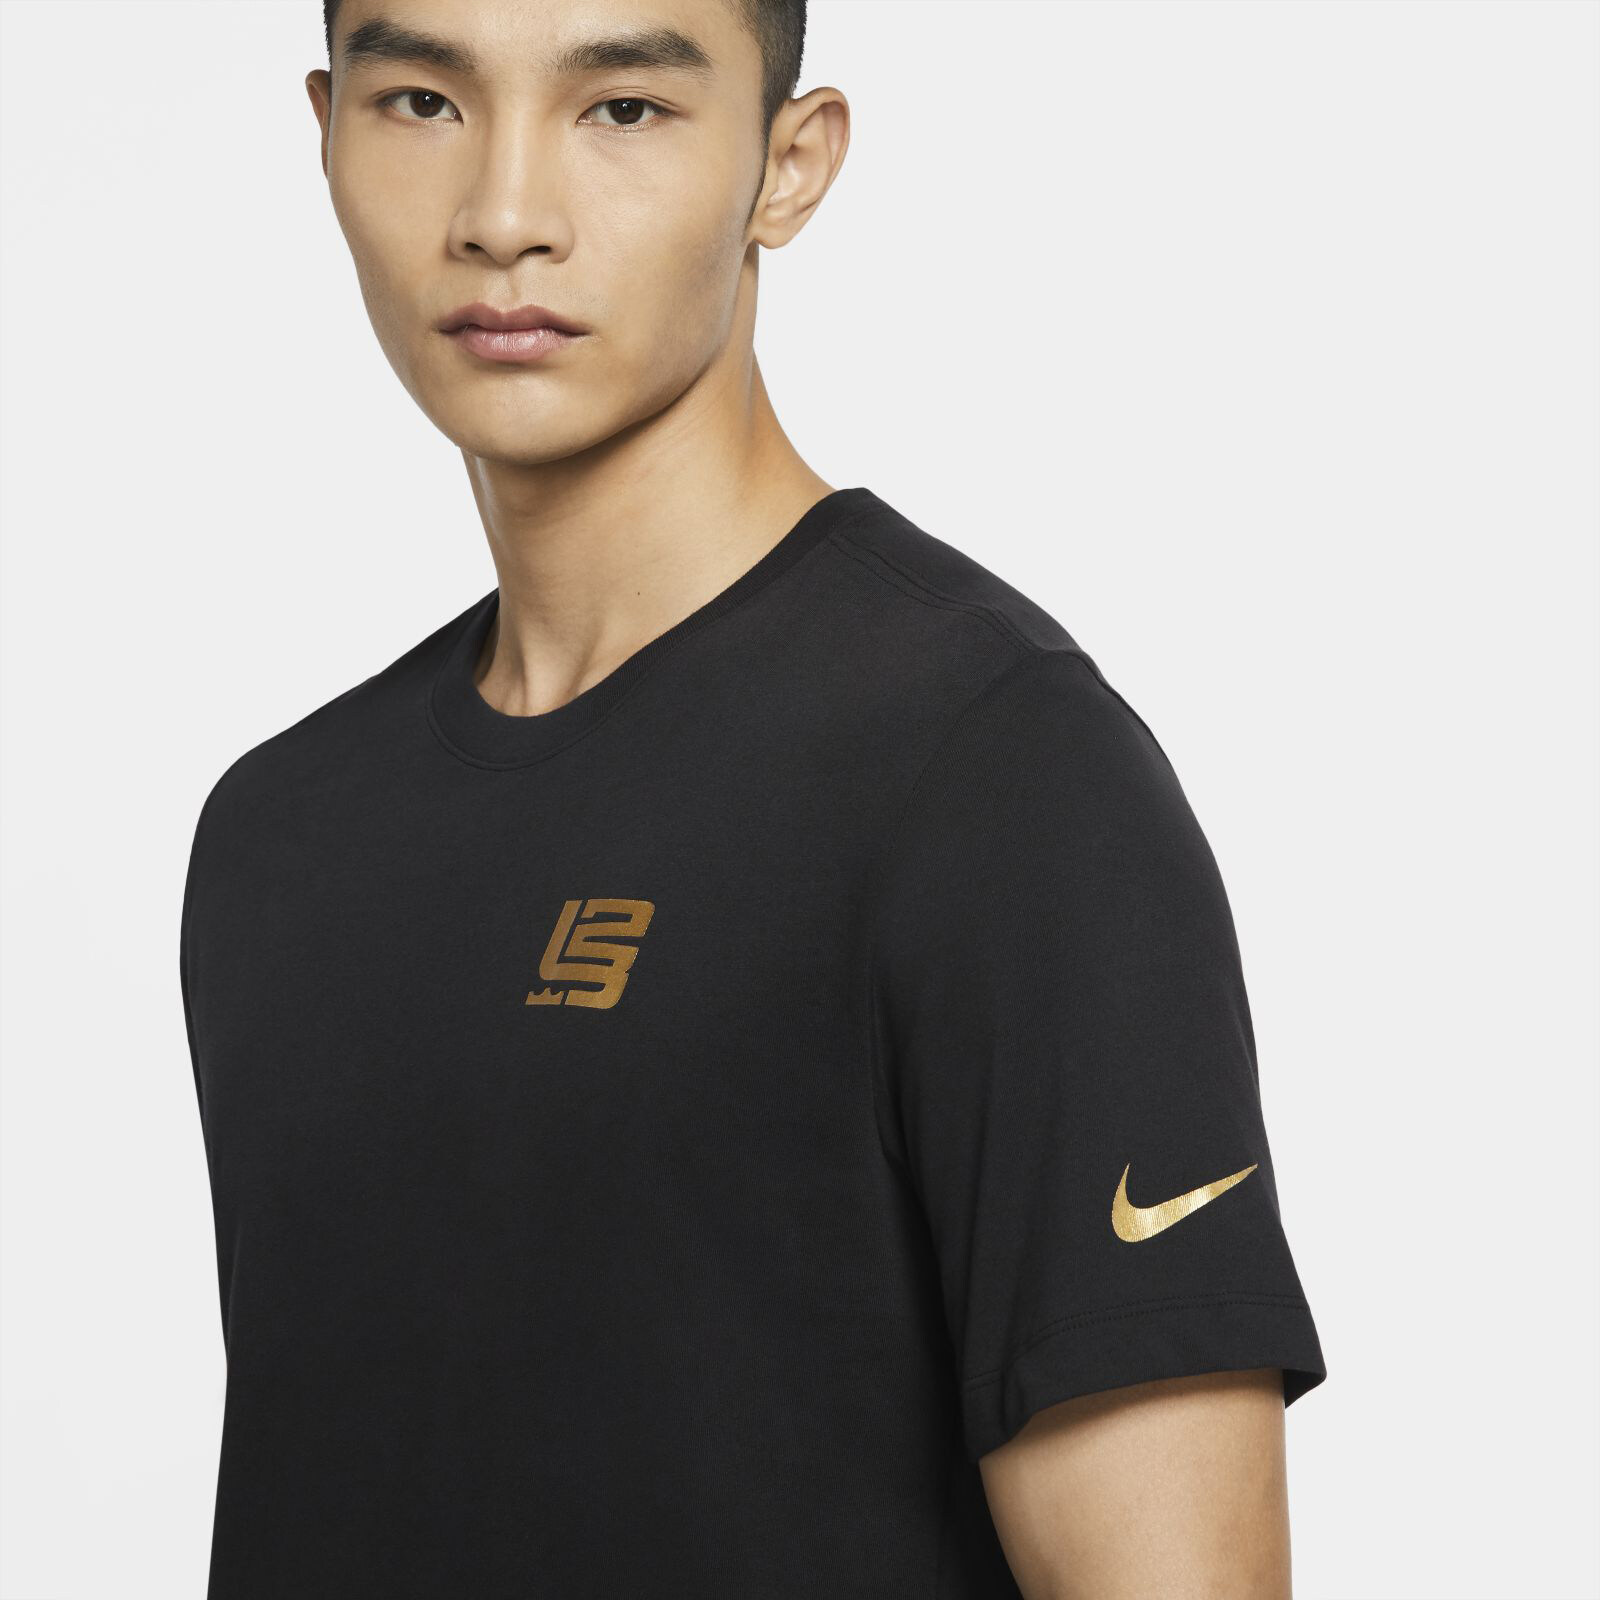 Nike Men's Dri-FIT T-Shirt - Black  เสื้อยืดผู้ชาย Nike Dri-FIT - สีดำ